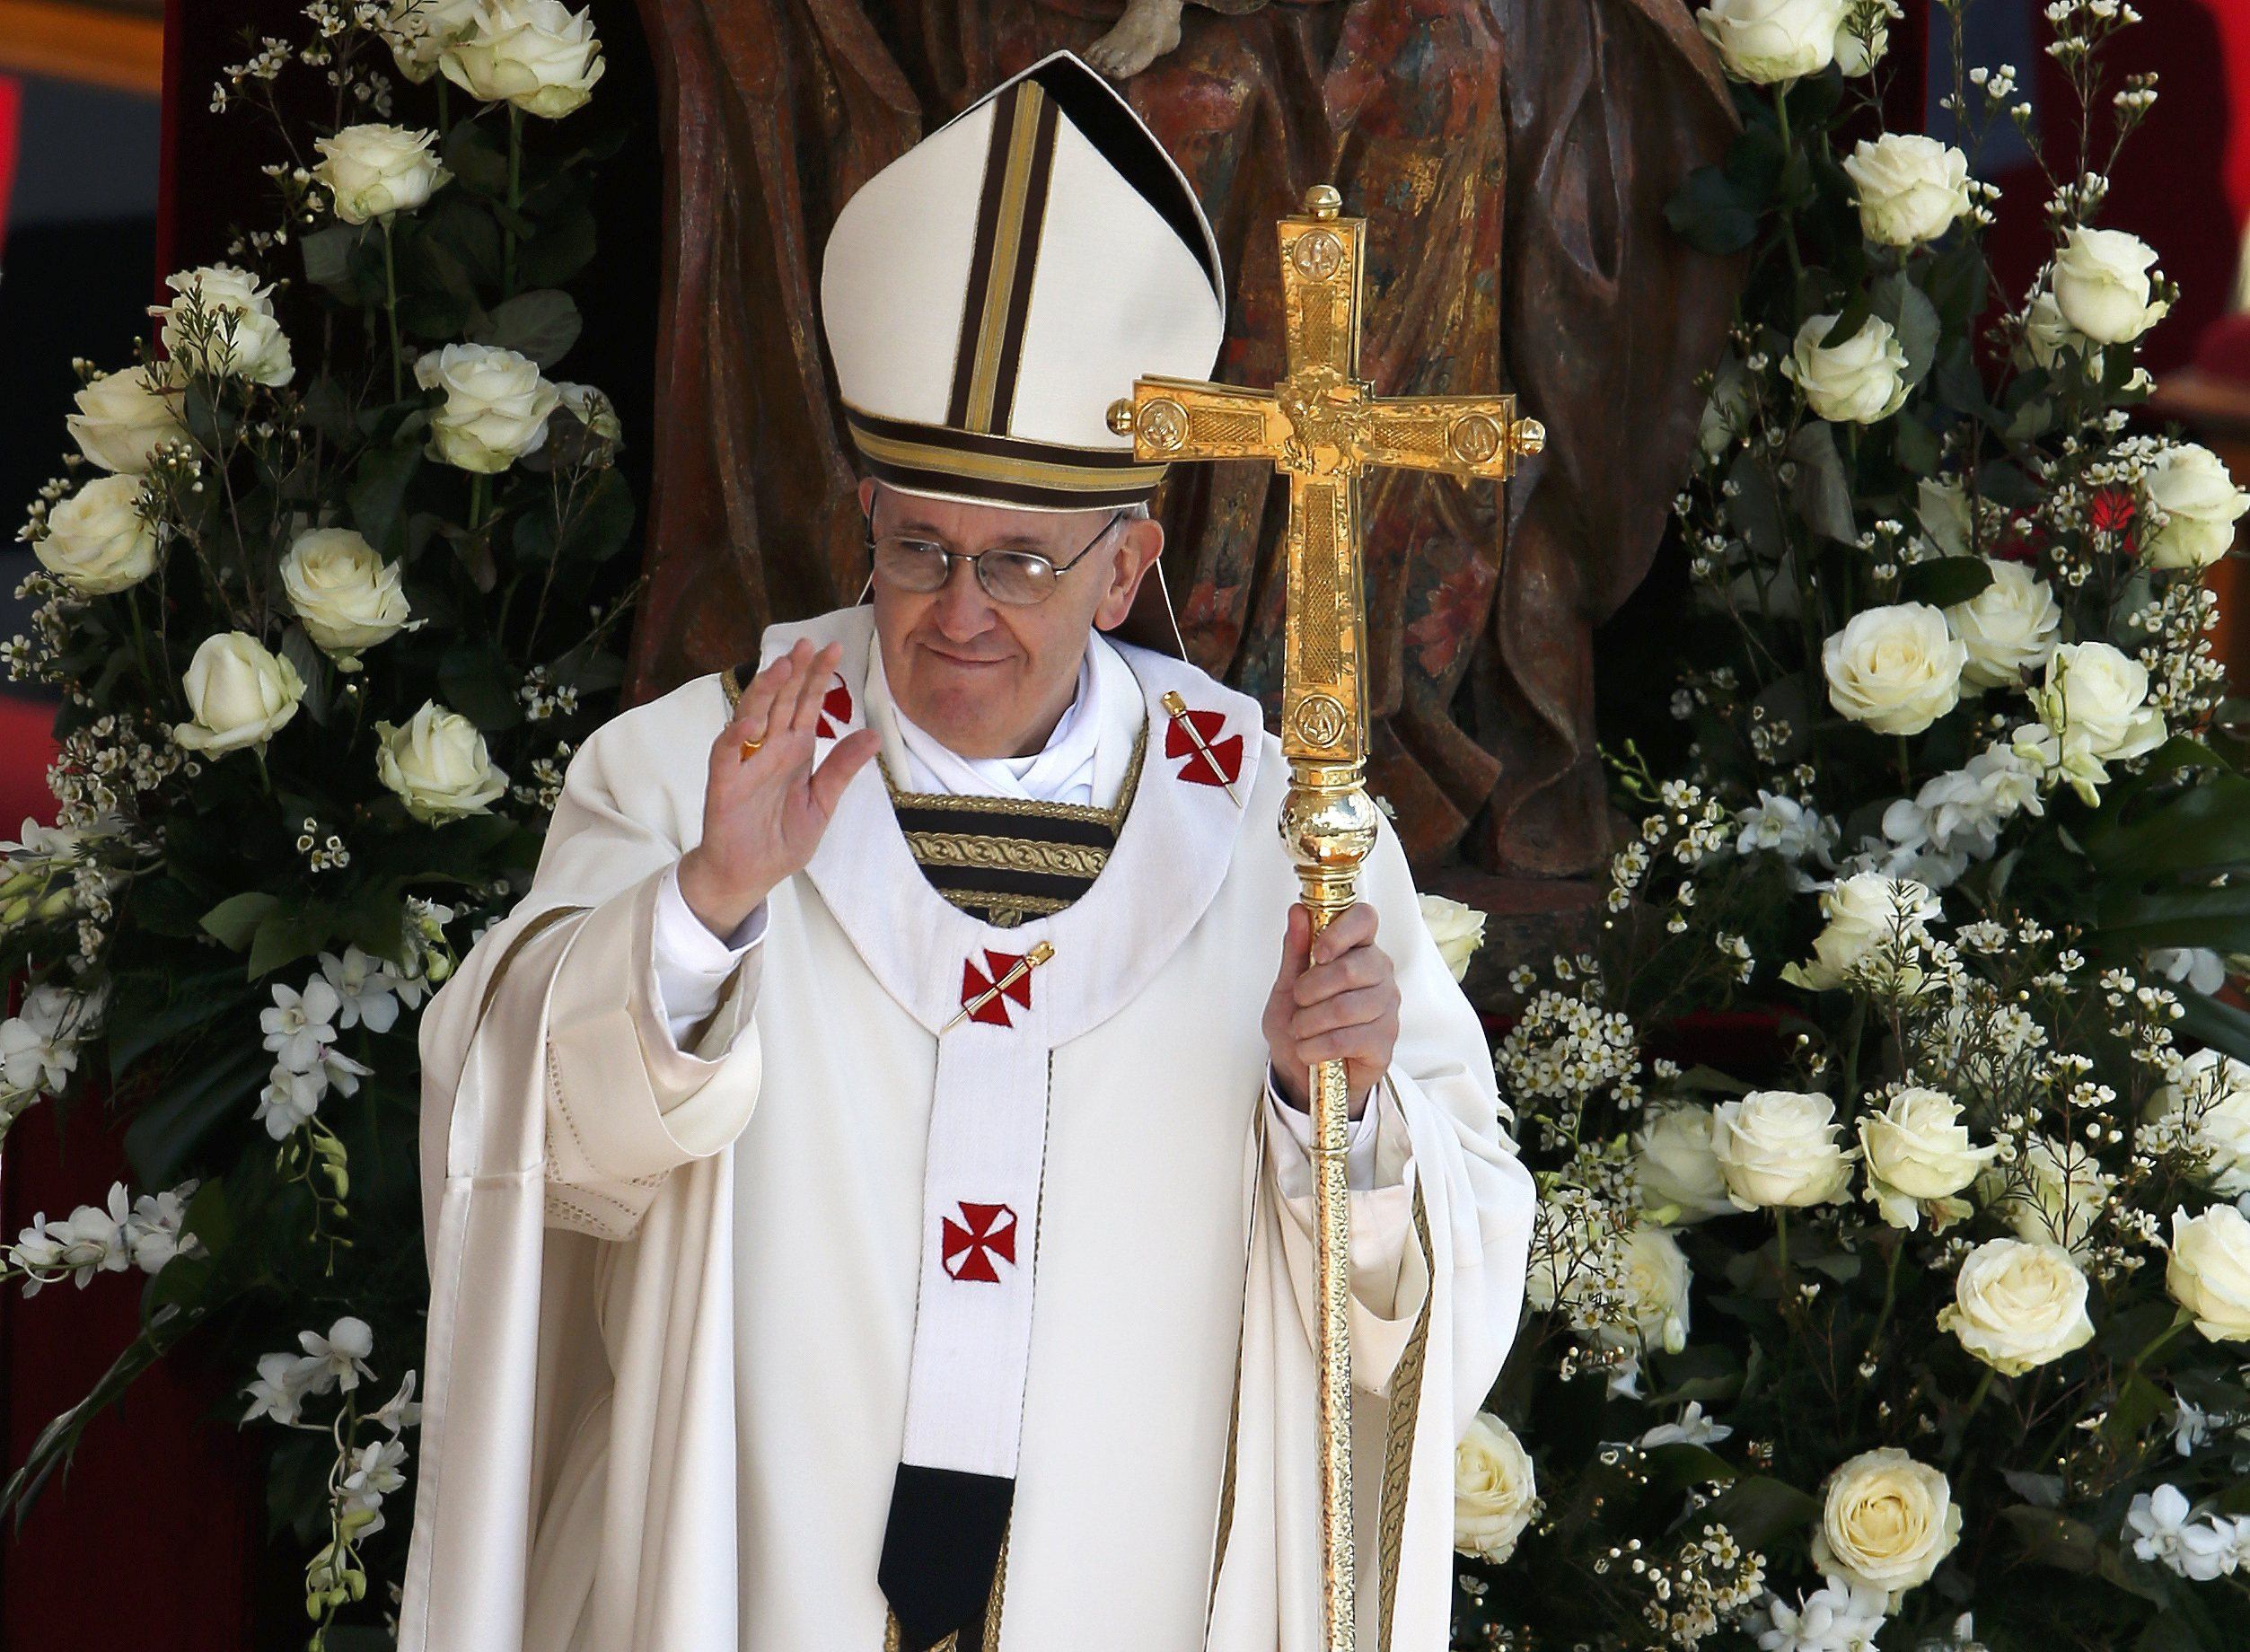 Ο Πάπας θα τελέσει τη λειτουργία της Μ.Πέμπτης στο παρεκκλήσι φυλακής ανηλίκων